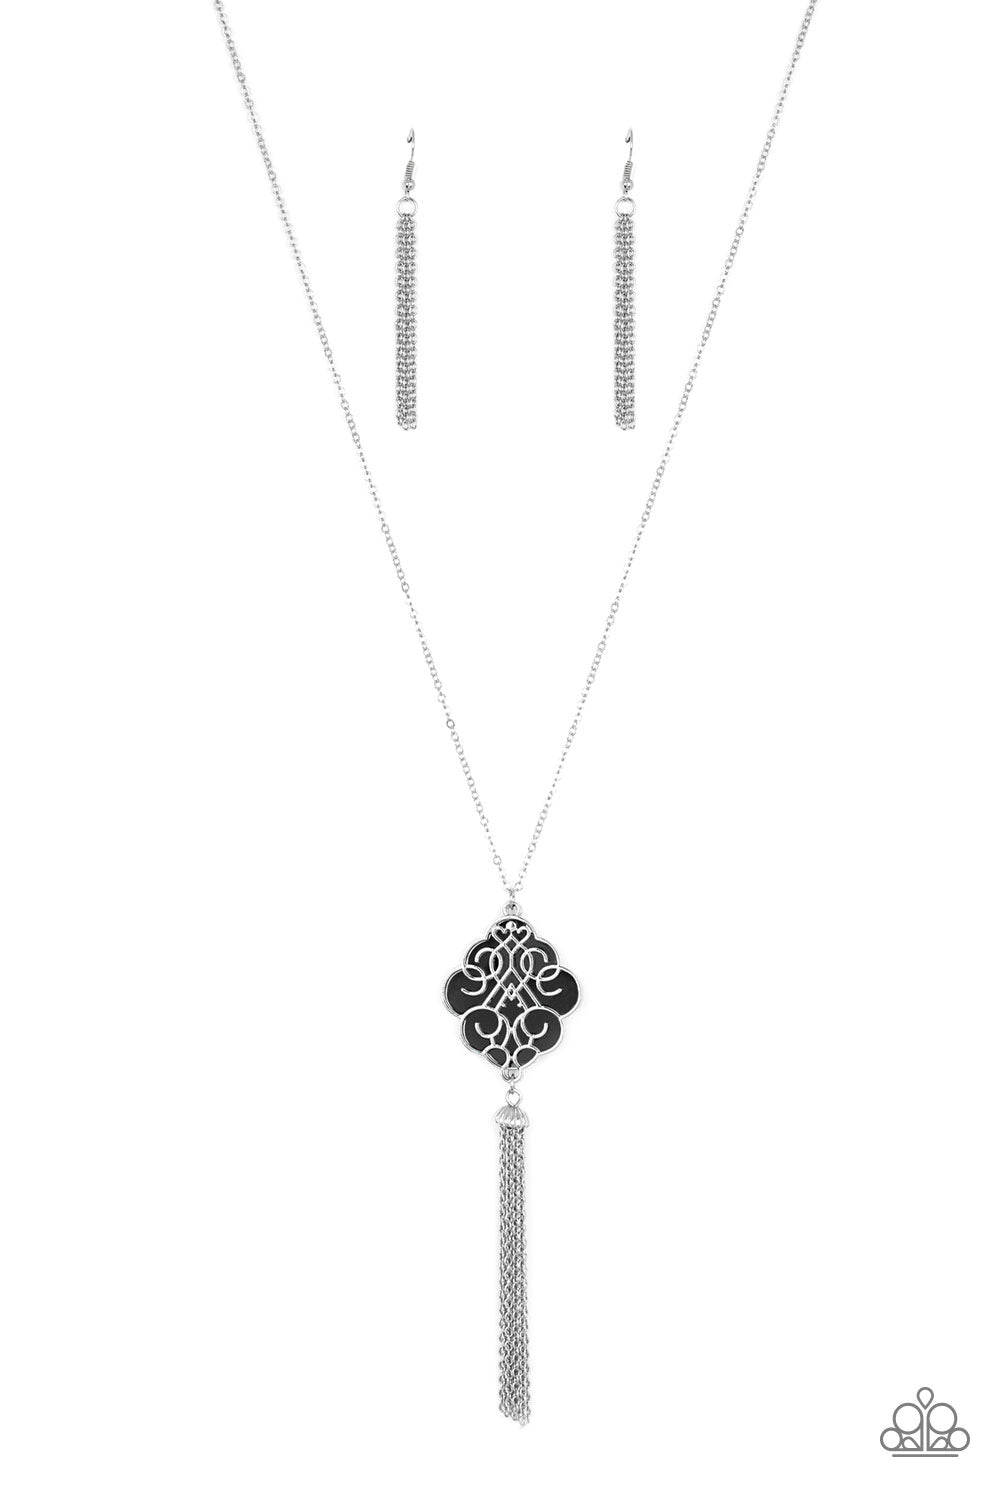 Malibu Mandala Paparazzi Necklace with Earrings Black